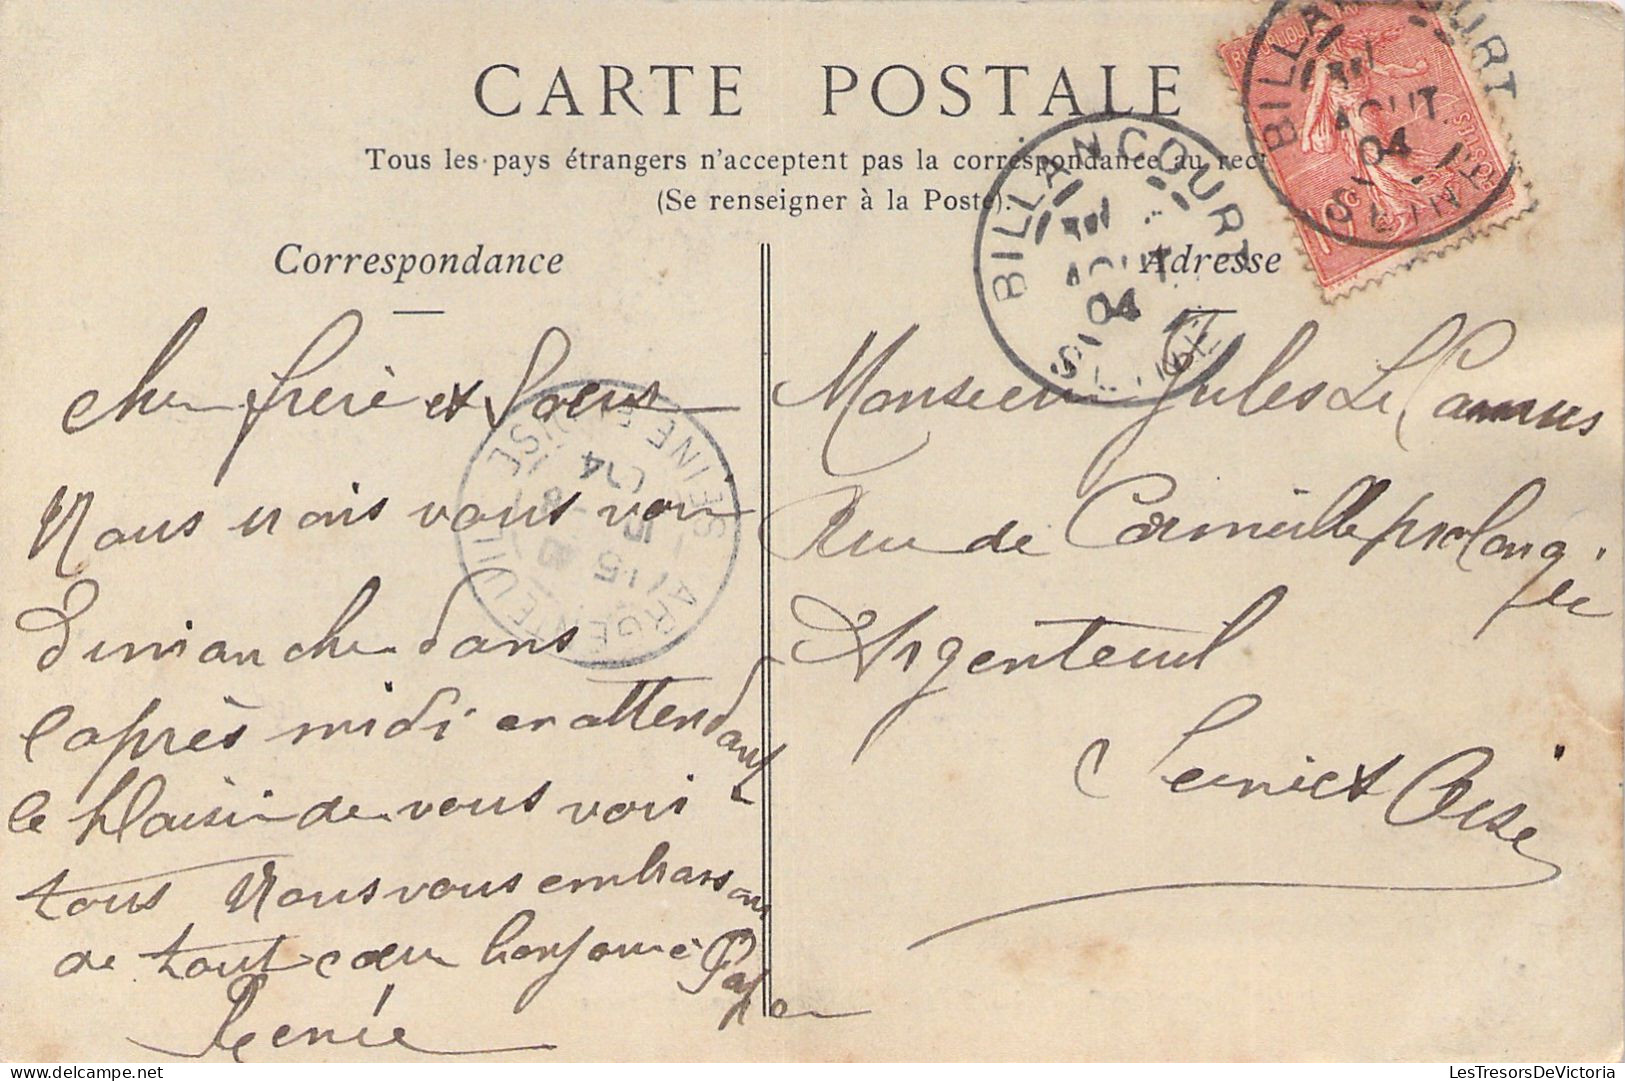 FRANCE - Billancourt - Sortie Usine Renault Freres - Animé - Ouvriers - Carte Postale Ancienne - Boulogne Billancourt